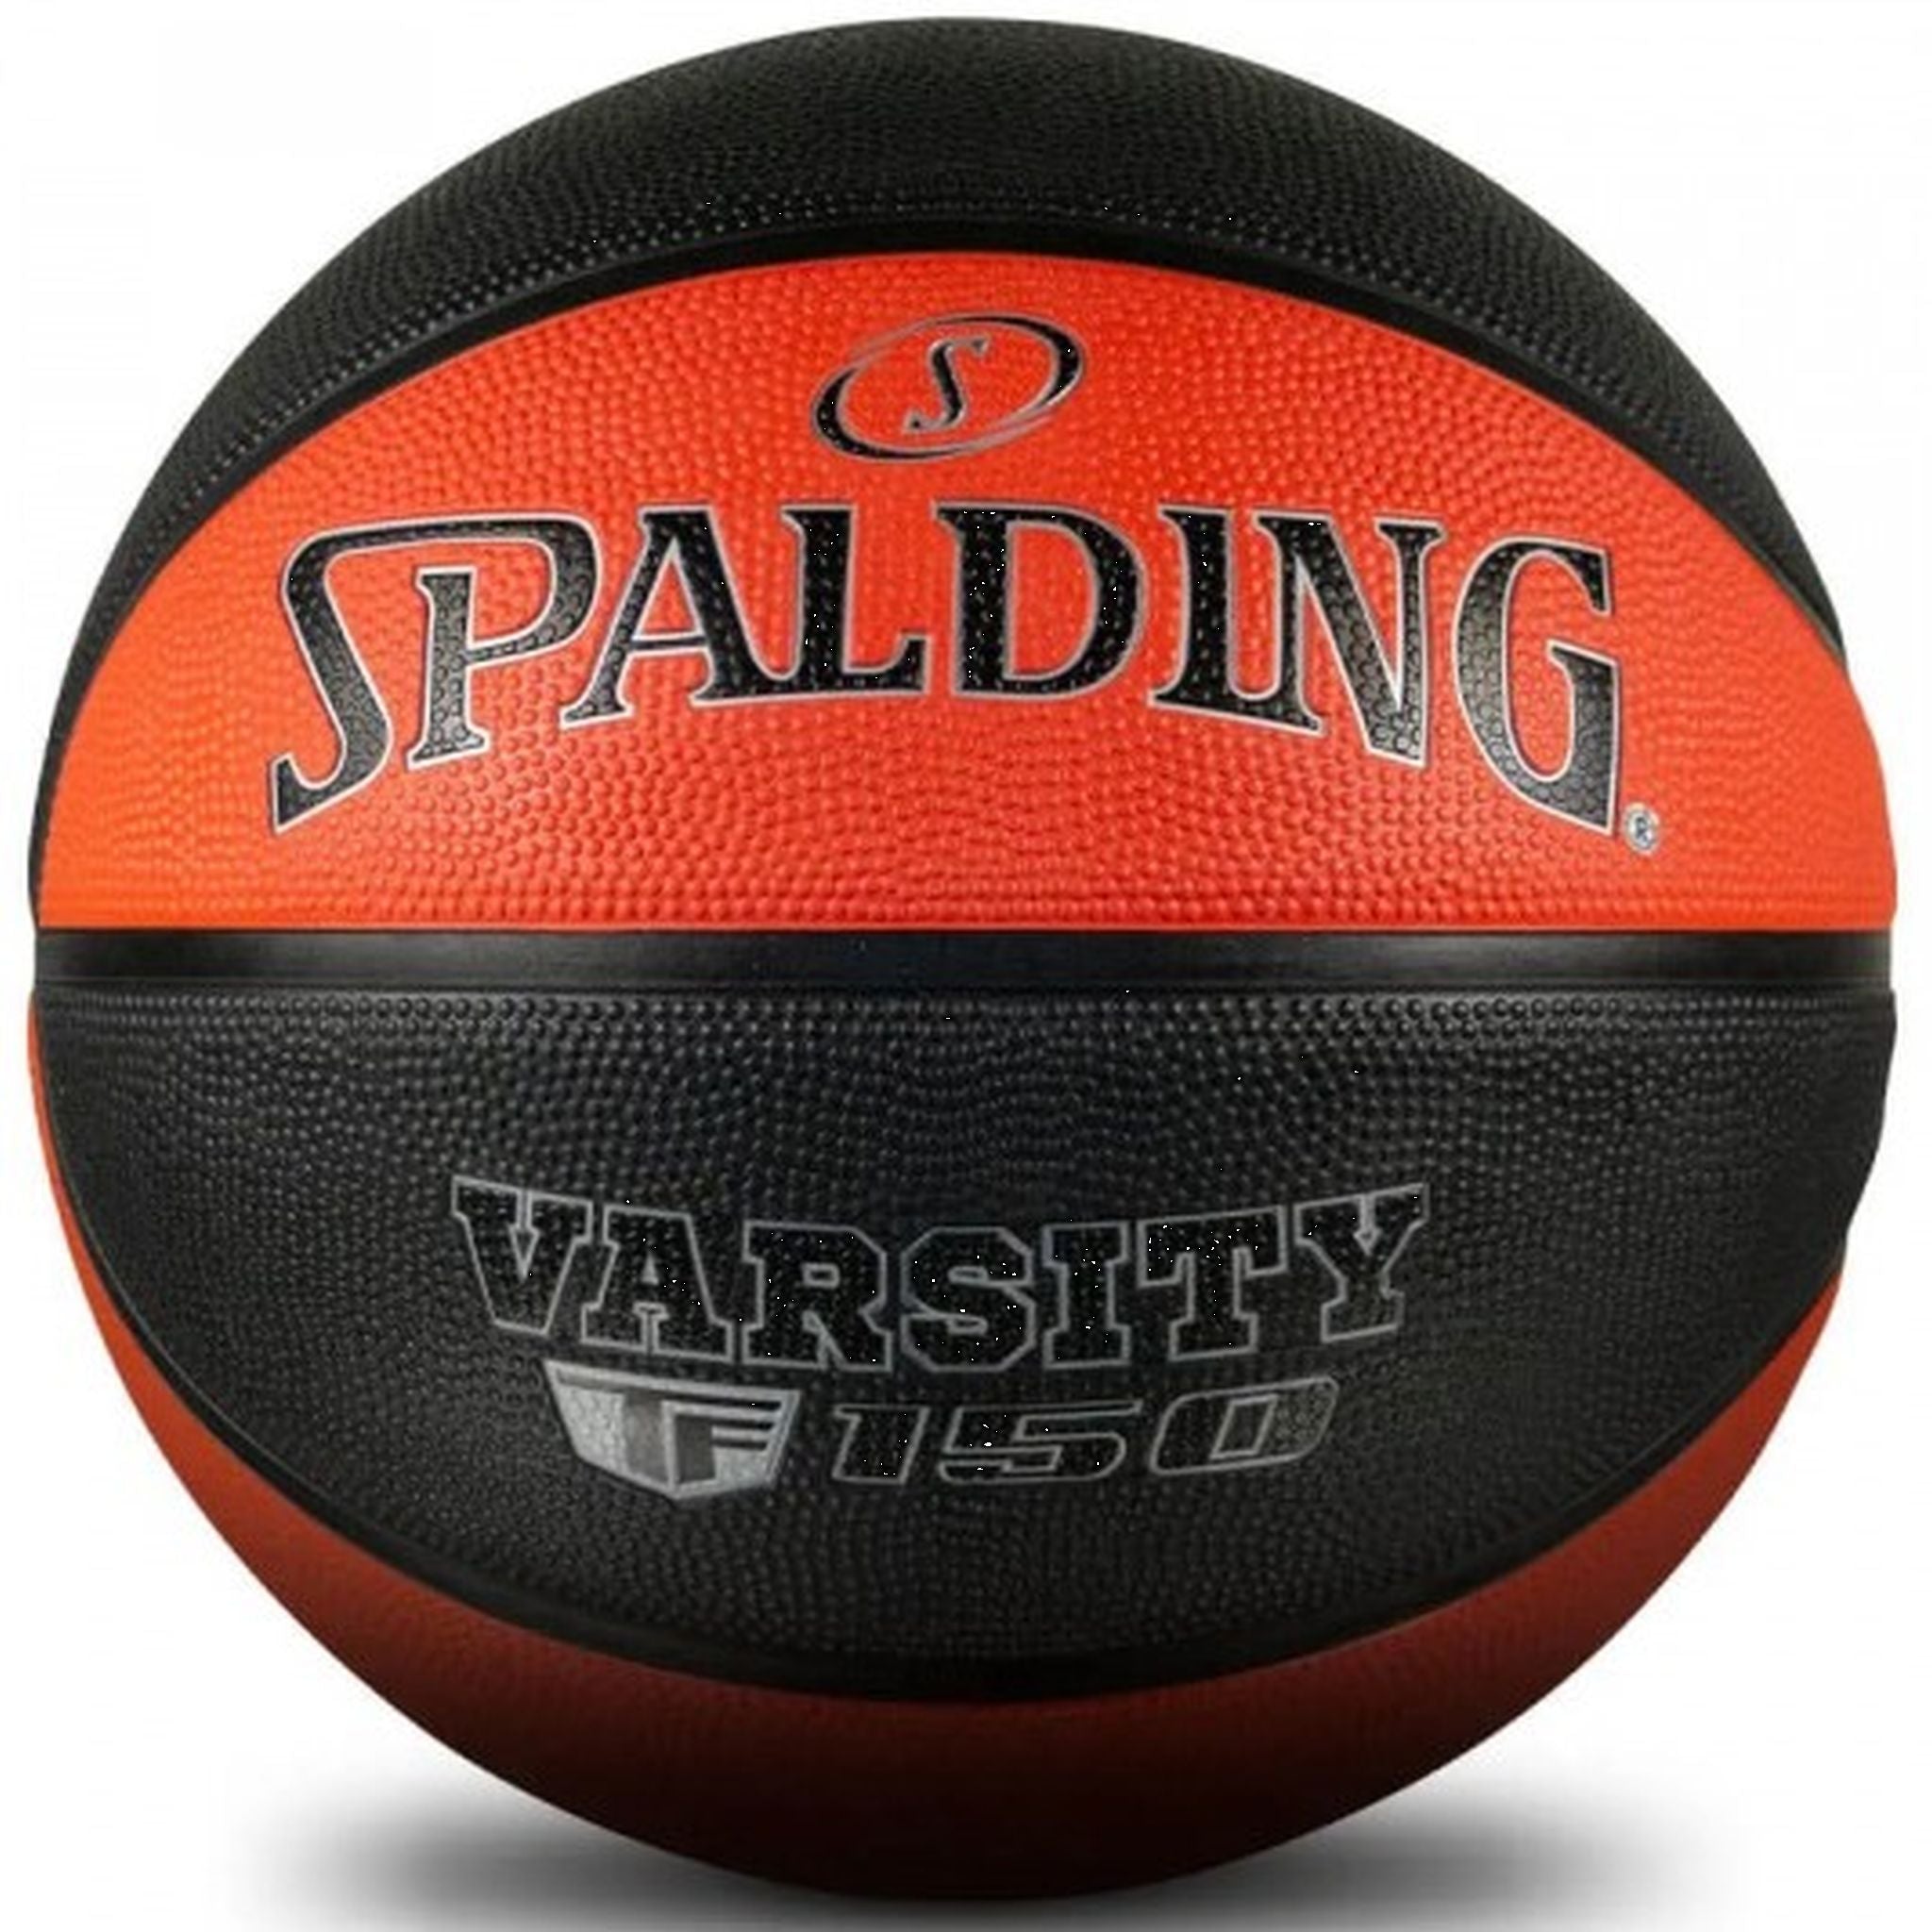 SPALDING Varsity TF-150 Basketball